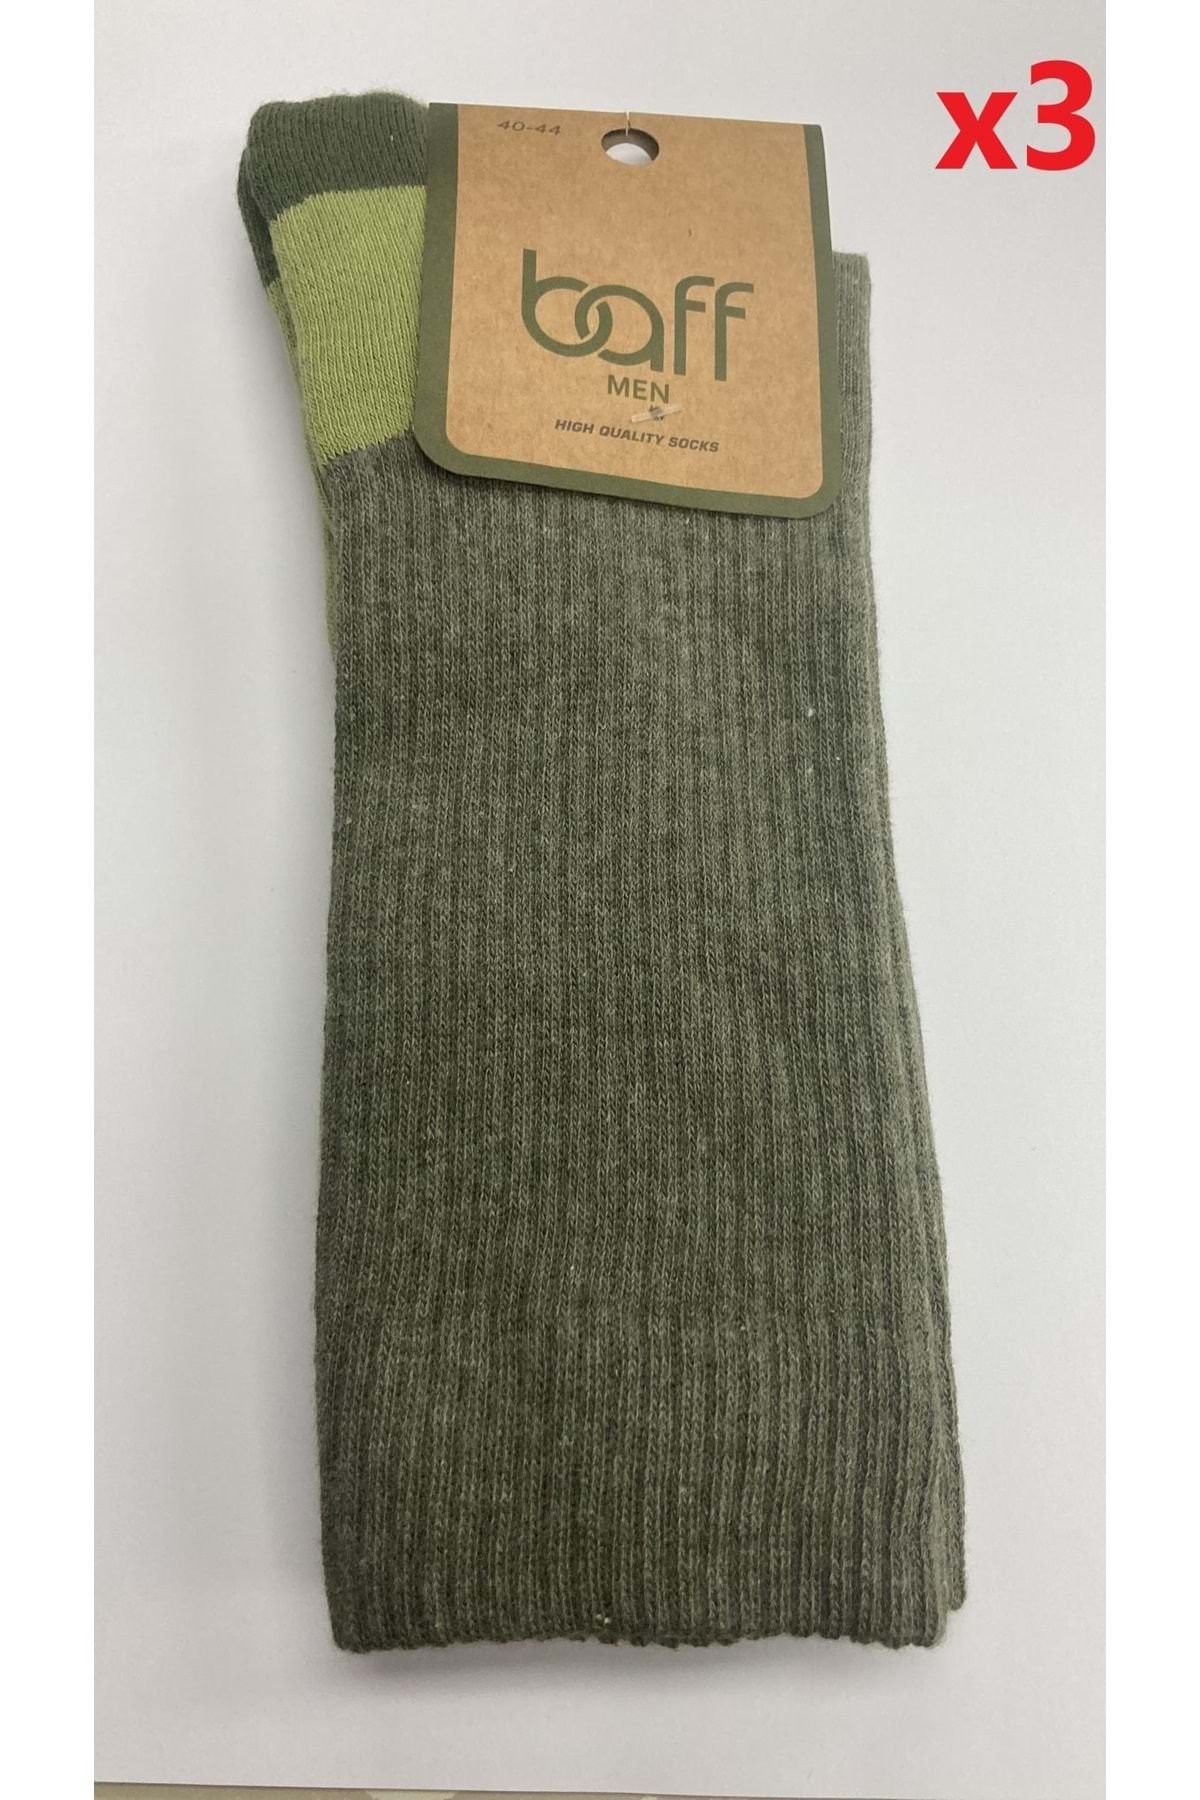 Baff Yeşil Takviyeli Outdoor Çorap (43-46) Yeşil Renk --- --- 3 Çft. Yeşil 1pk.